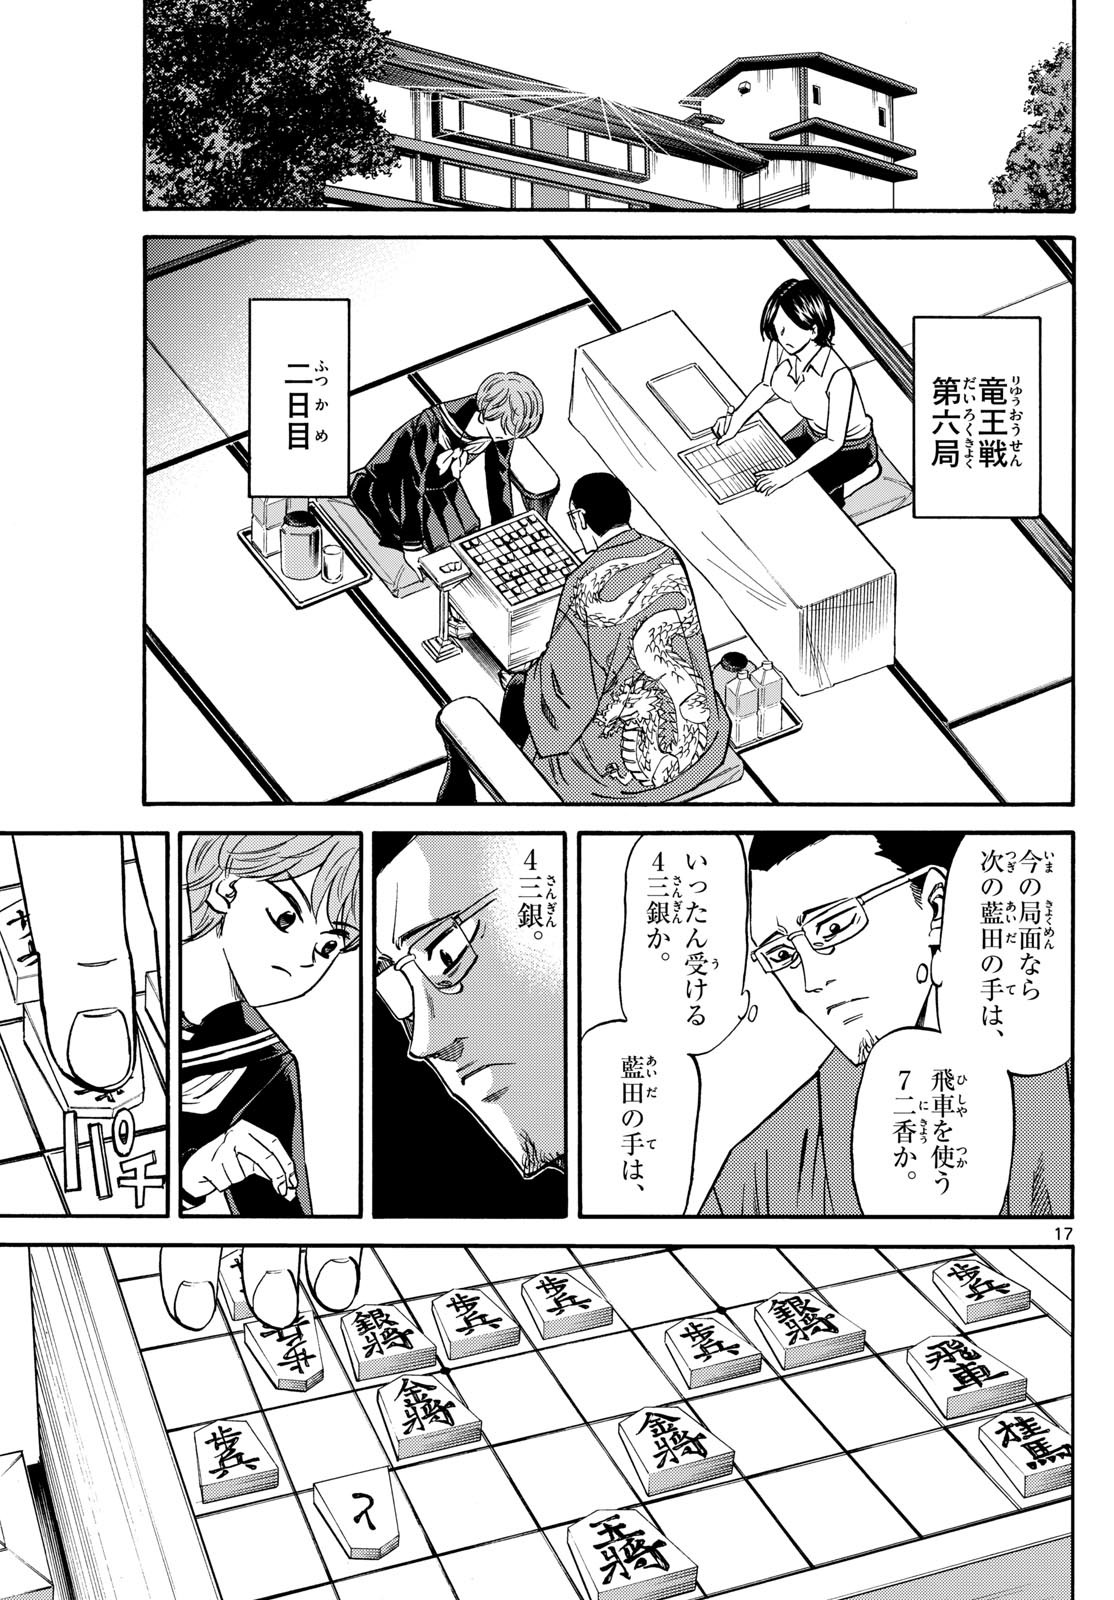 Ryu-to-Ichigo - Chapter 169 - Page 17